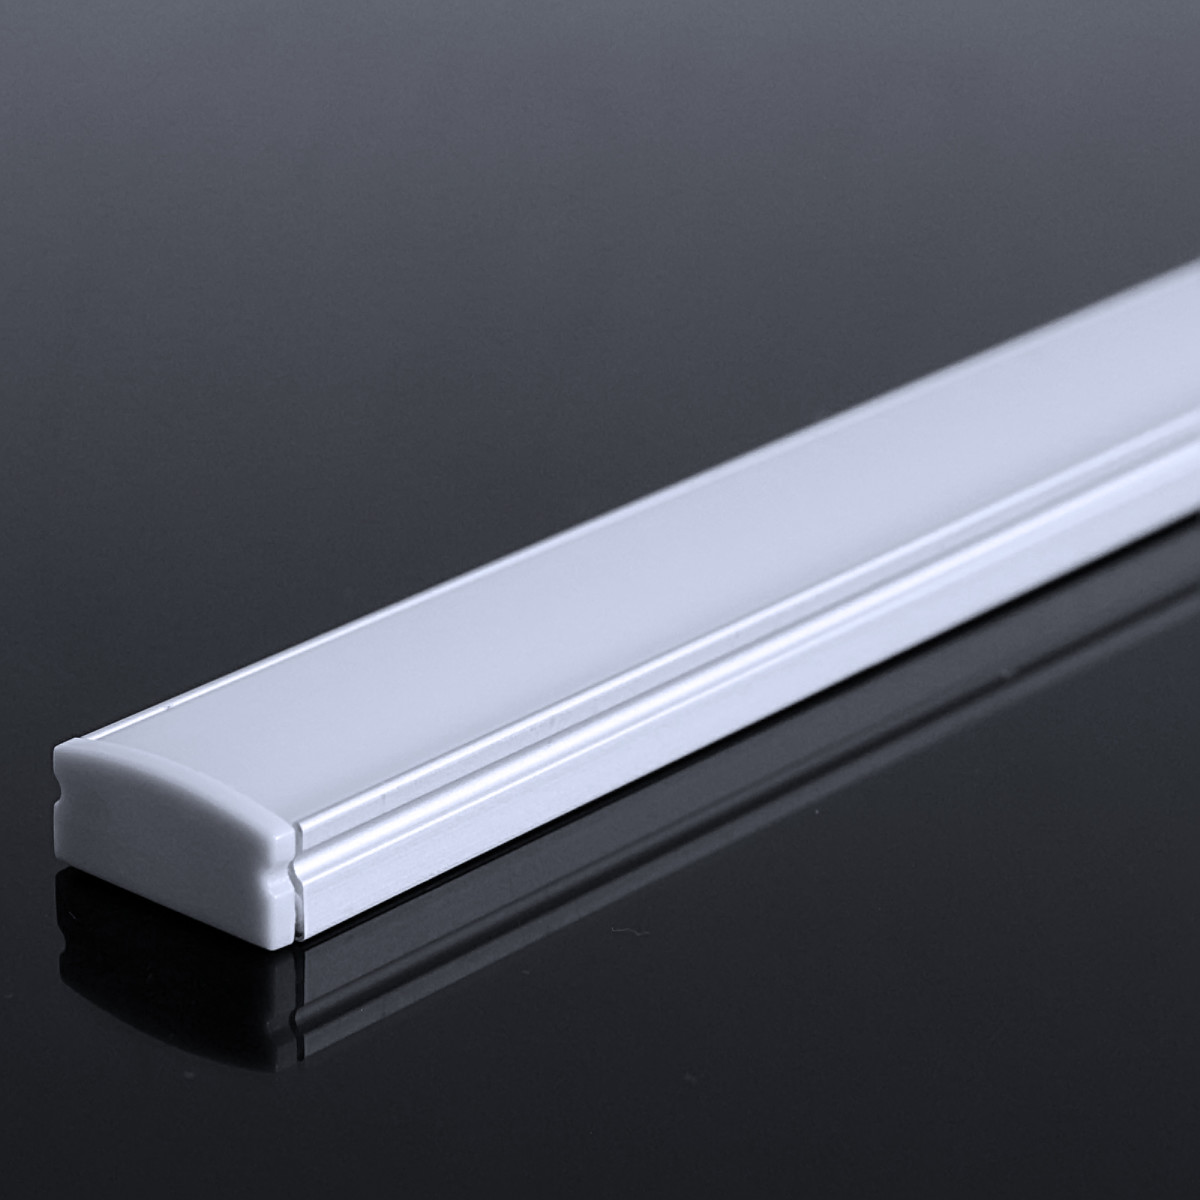 LED Flachprofil "Slim-Line" | Abdeckung diffus | Zuschnitt auf 19cm |